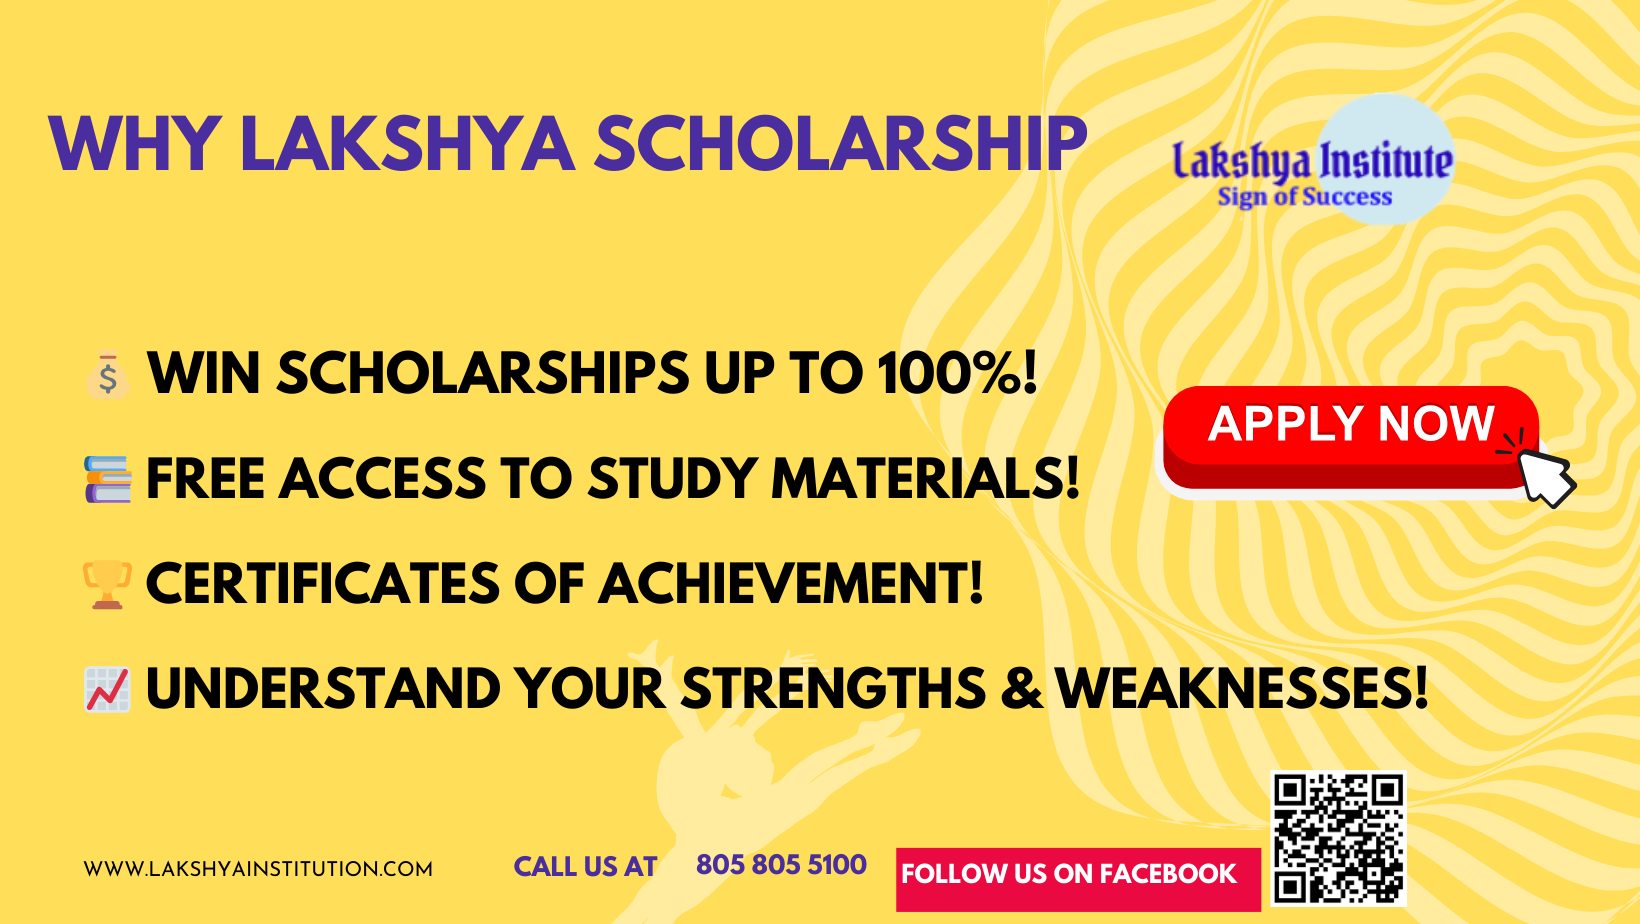 Lakshya Scholarship program